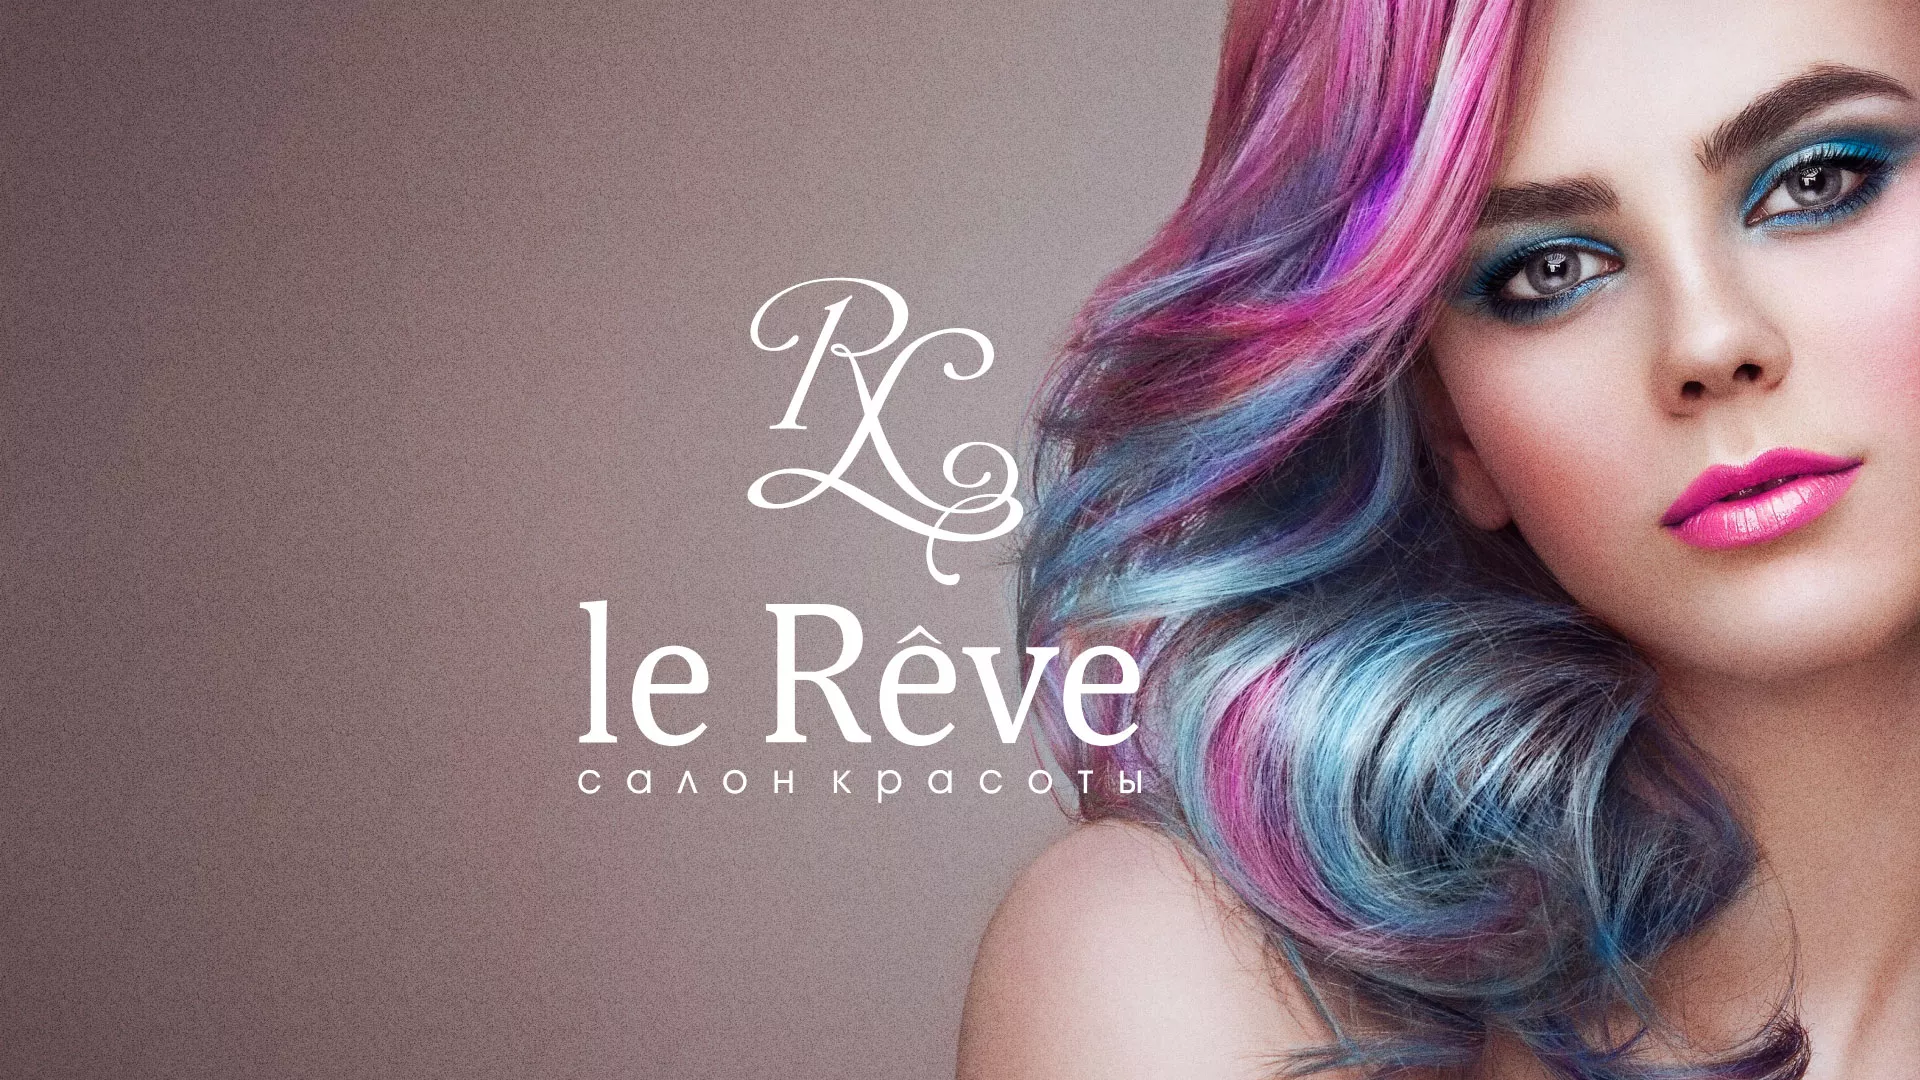 Создание сайта для салона красоты «Le Reve» в Переславле-Залесском